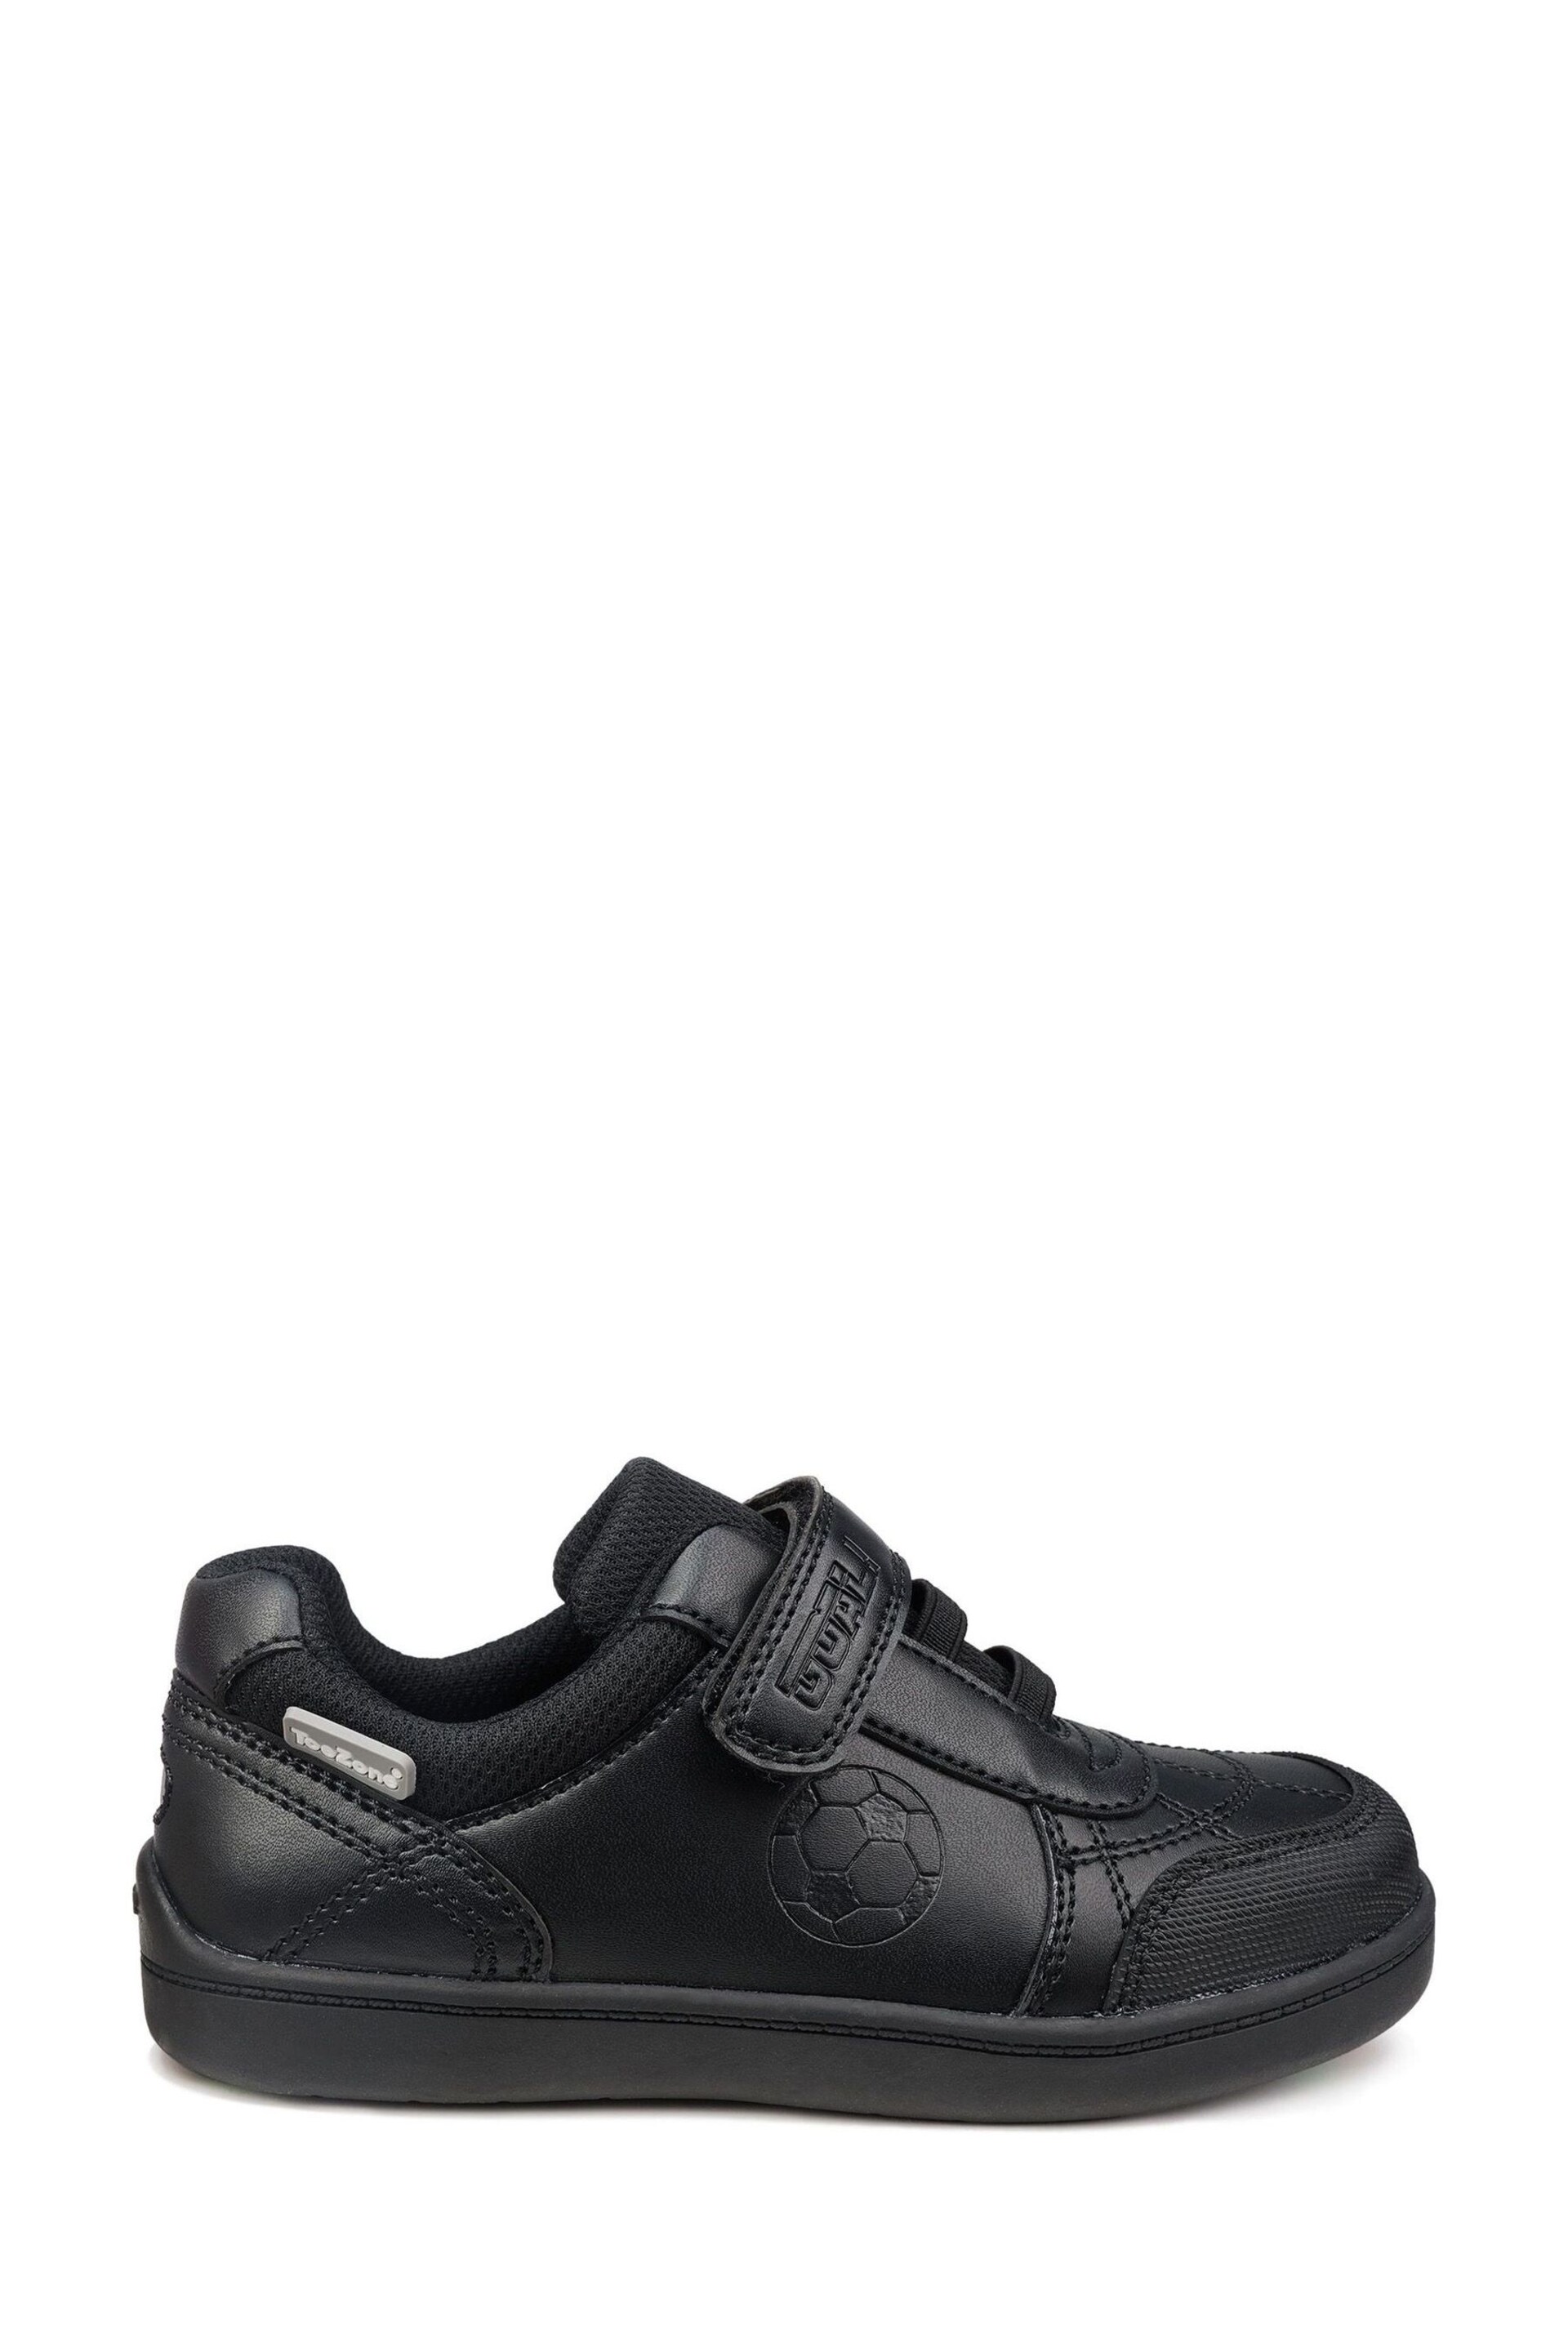 Toezone Blake Black Football Novelty Shoes - Image 1 of 7